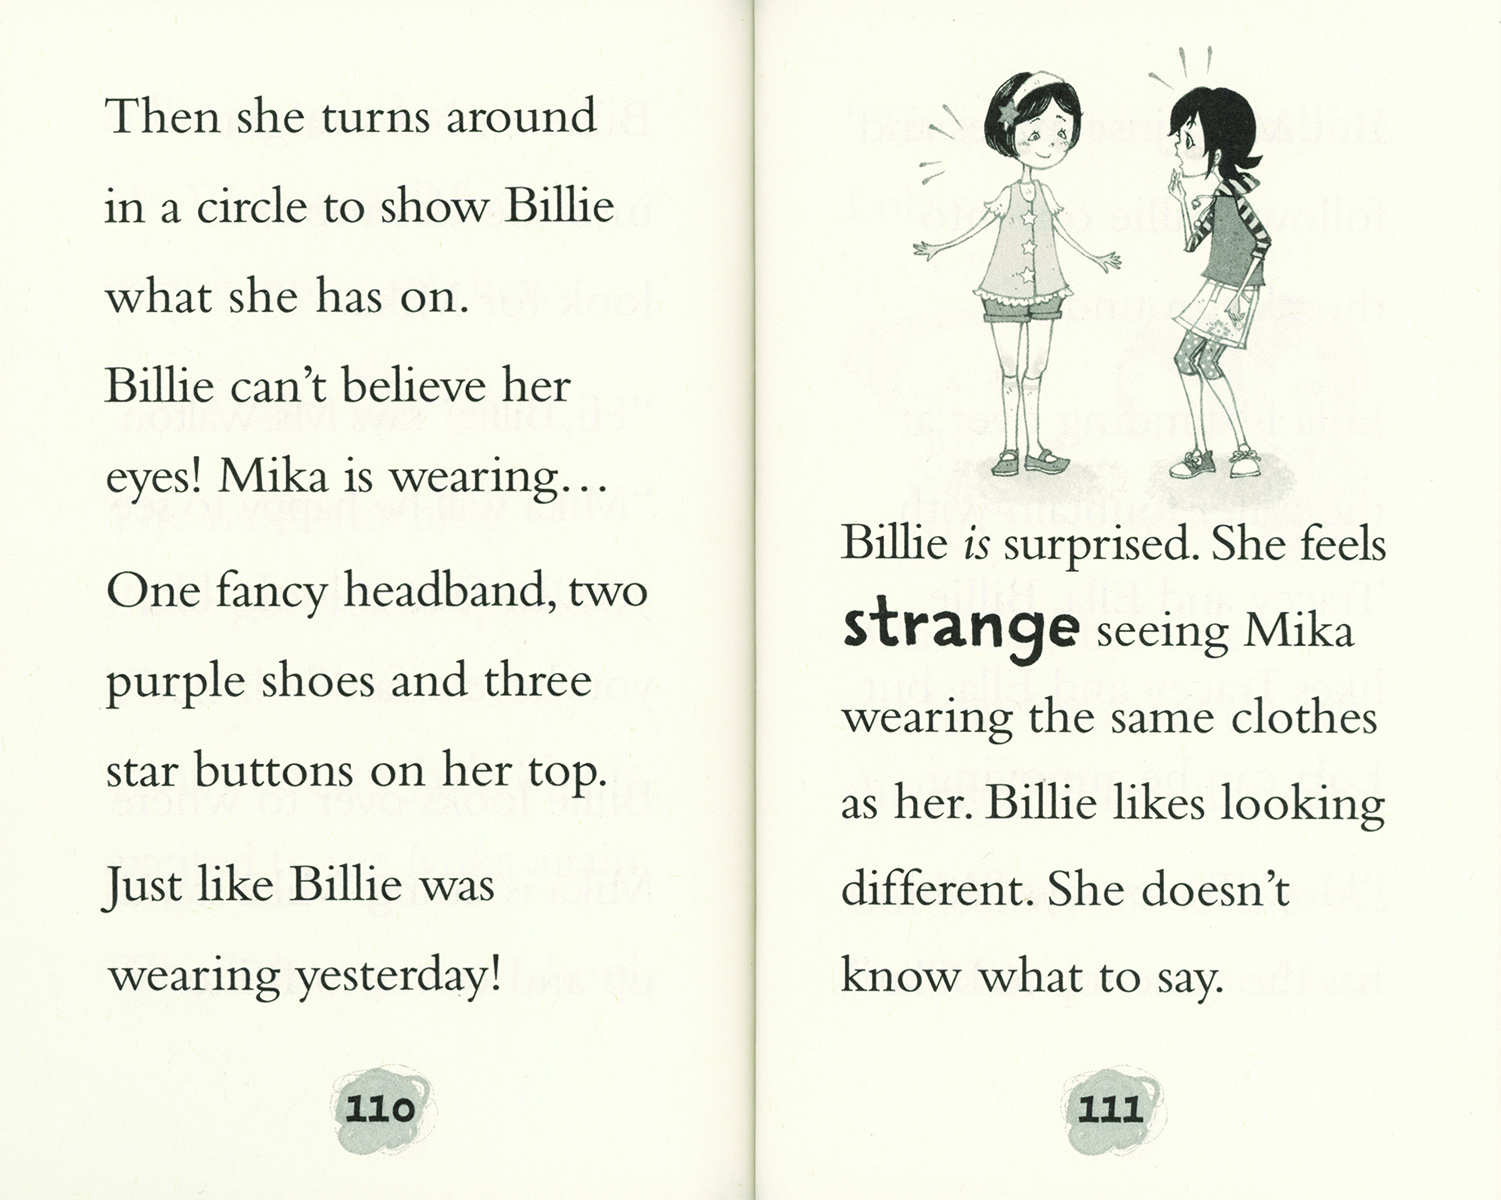 Billie's Super Stories